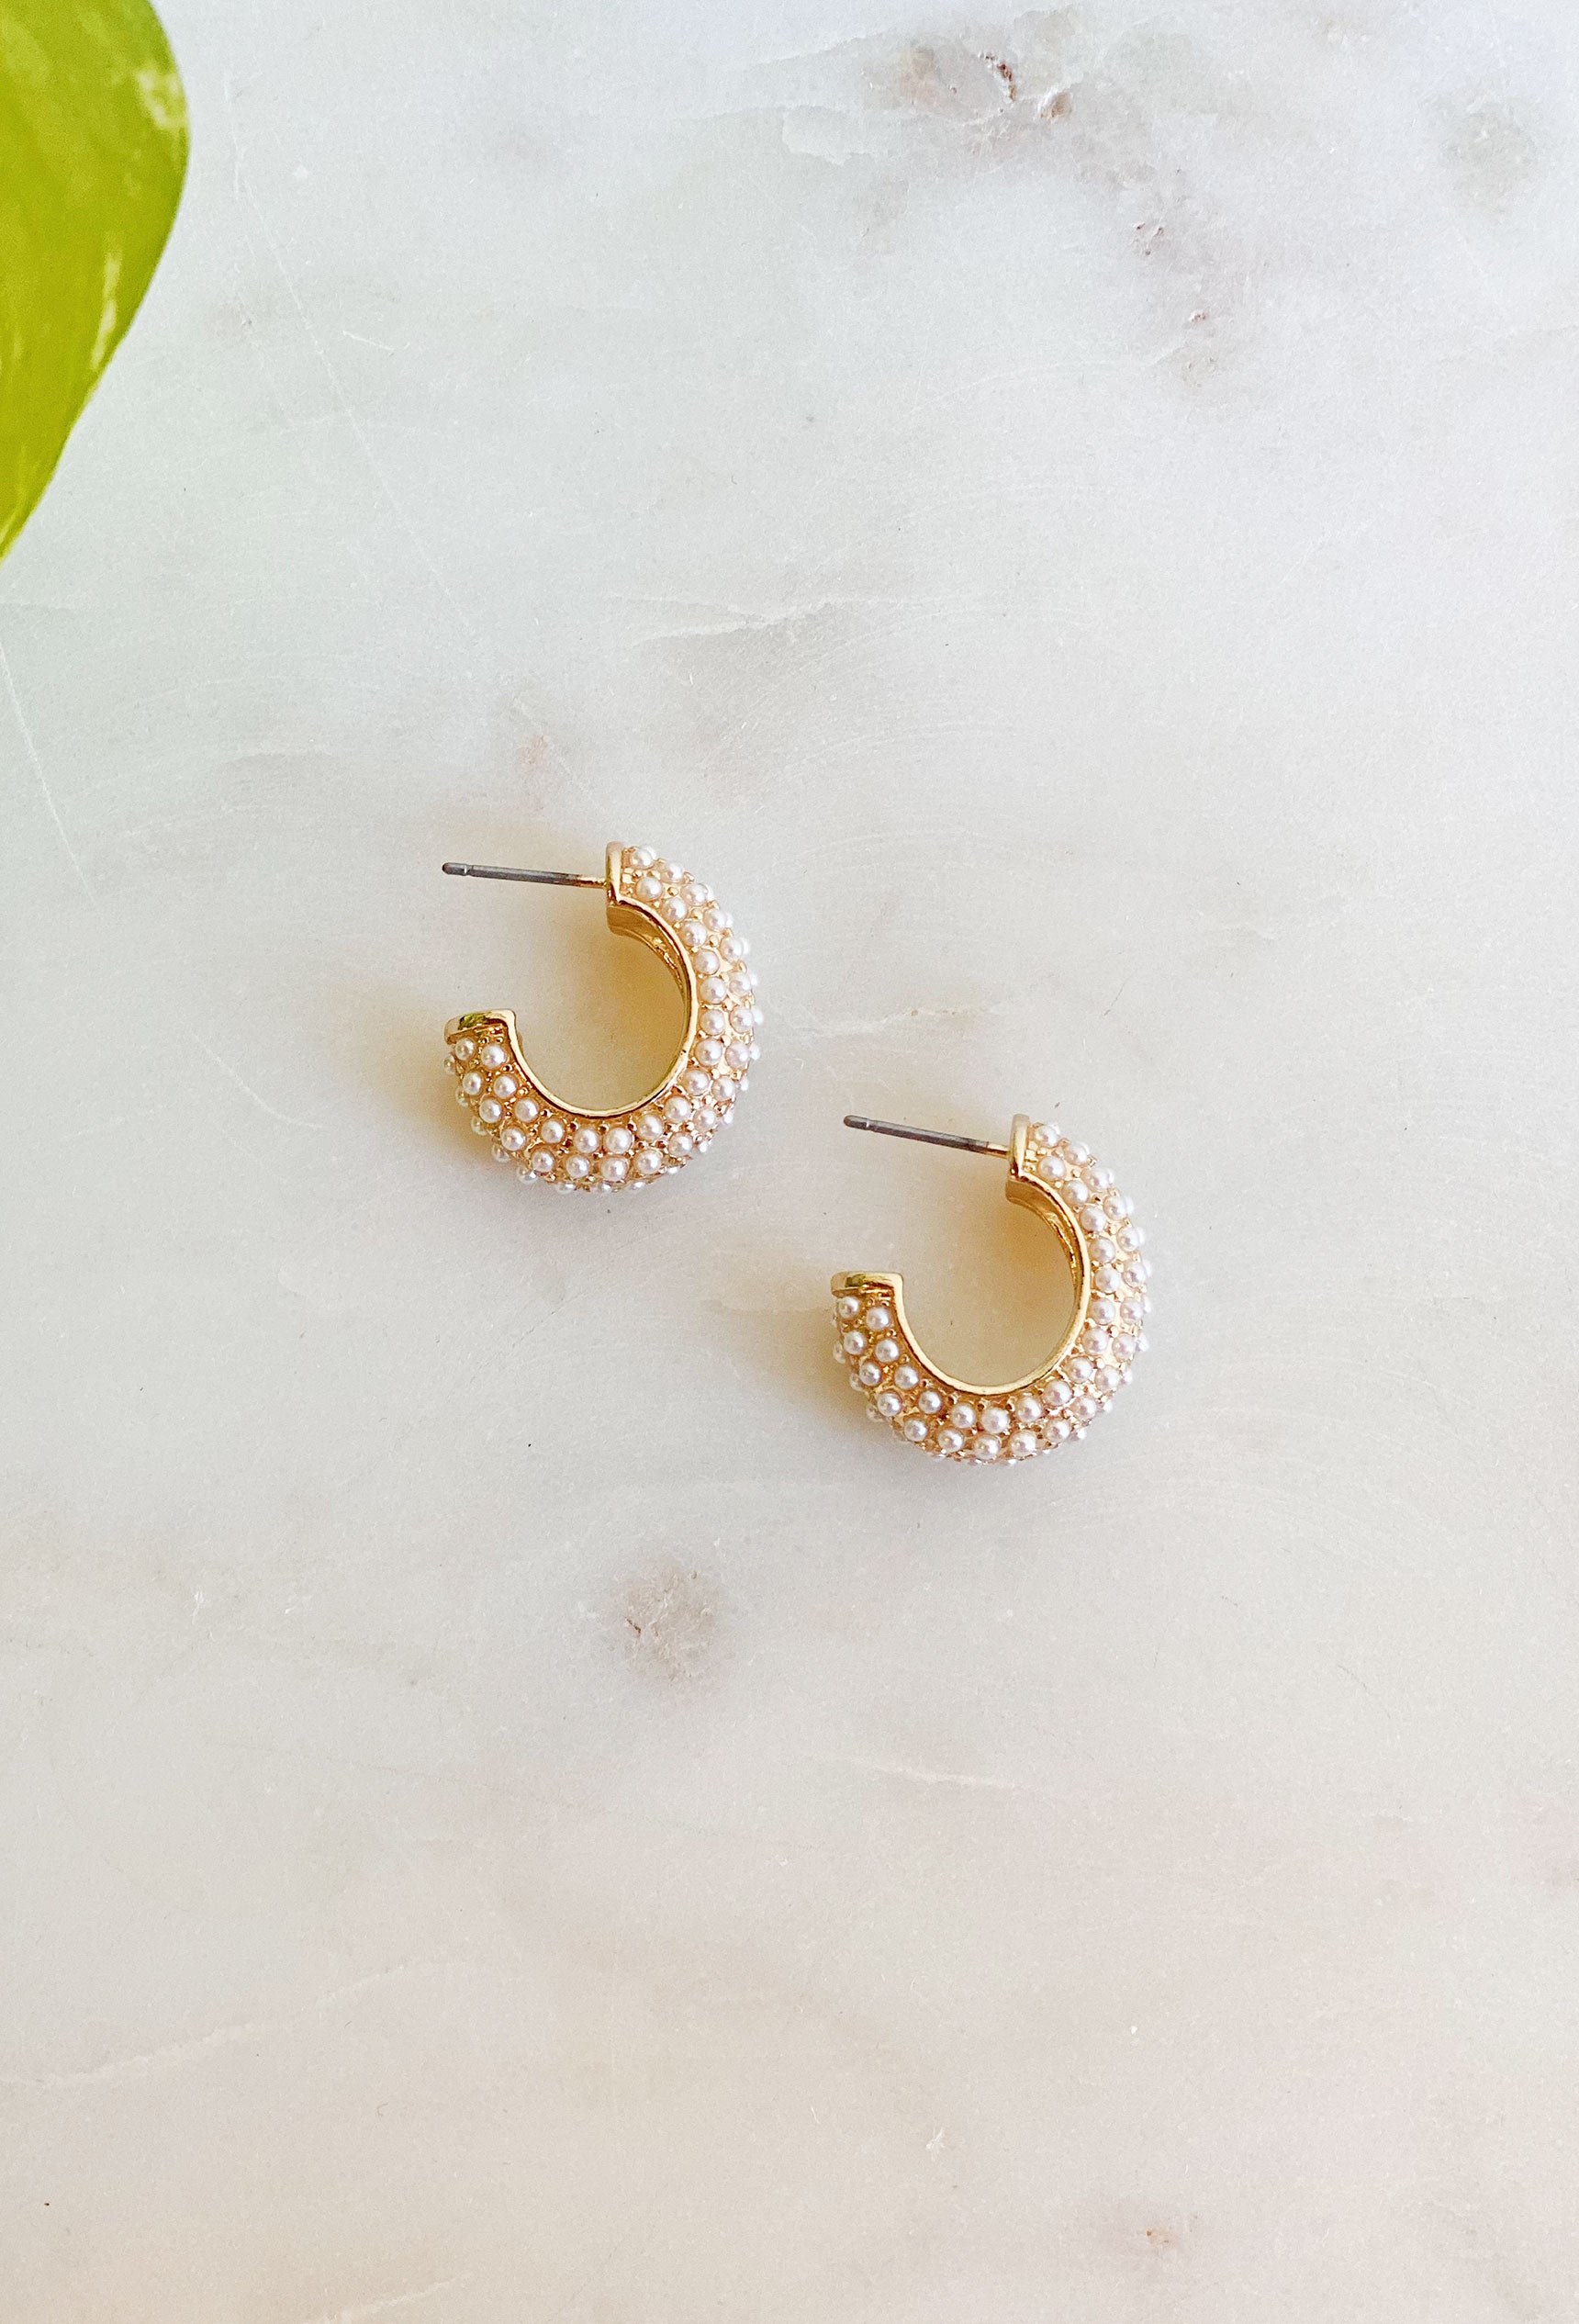 Gracie Pearl Hoop Earrings, which half hoop earrings, covered in tiny pearls